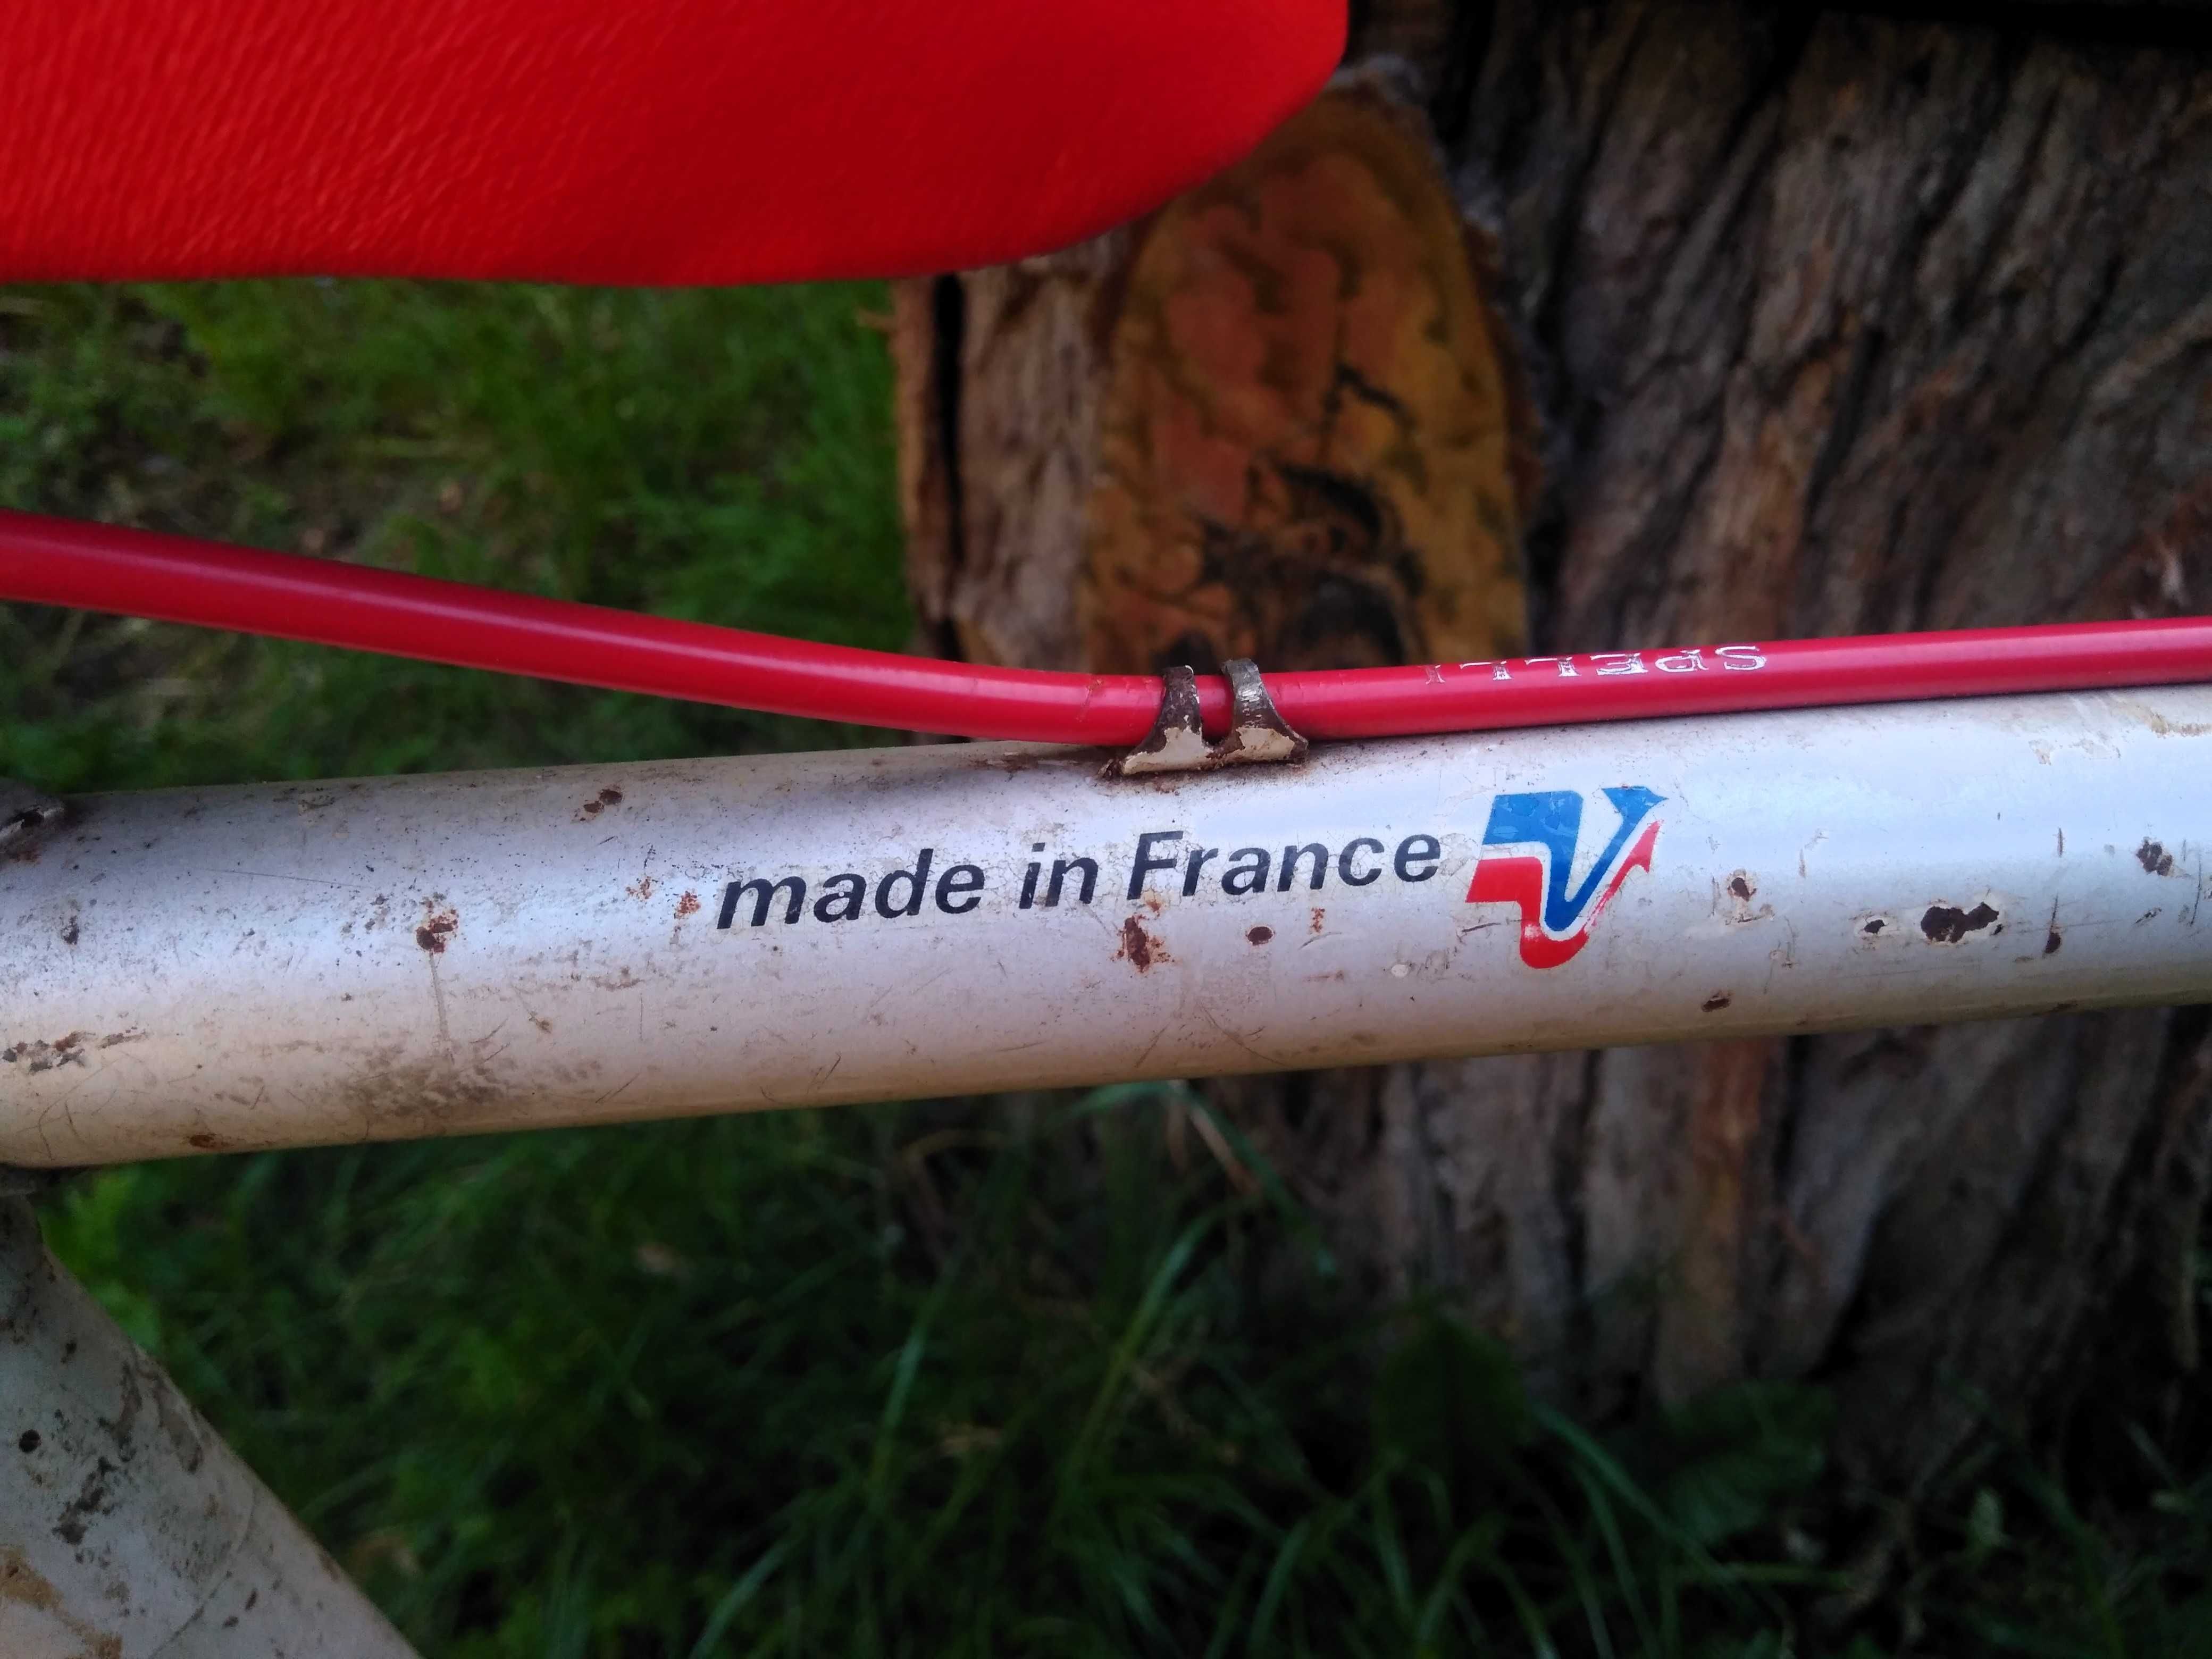 СУПЕР ЯКІСТЬ! Оригінальний французький велосипед Peugeot.